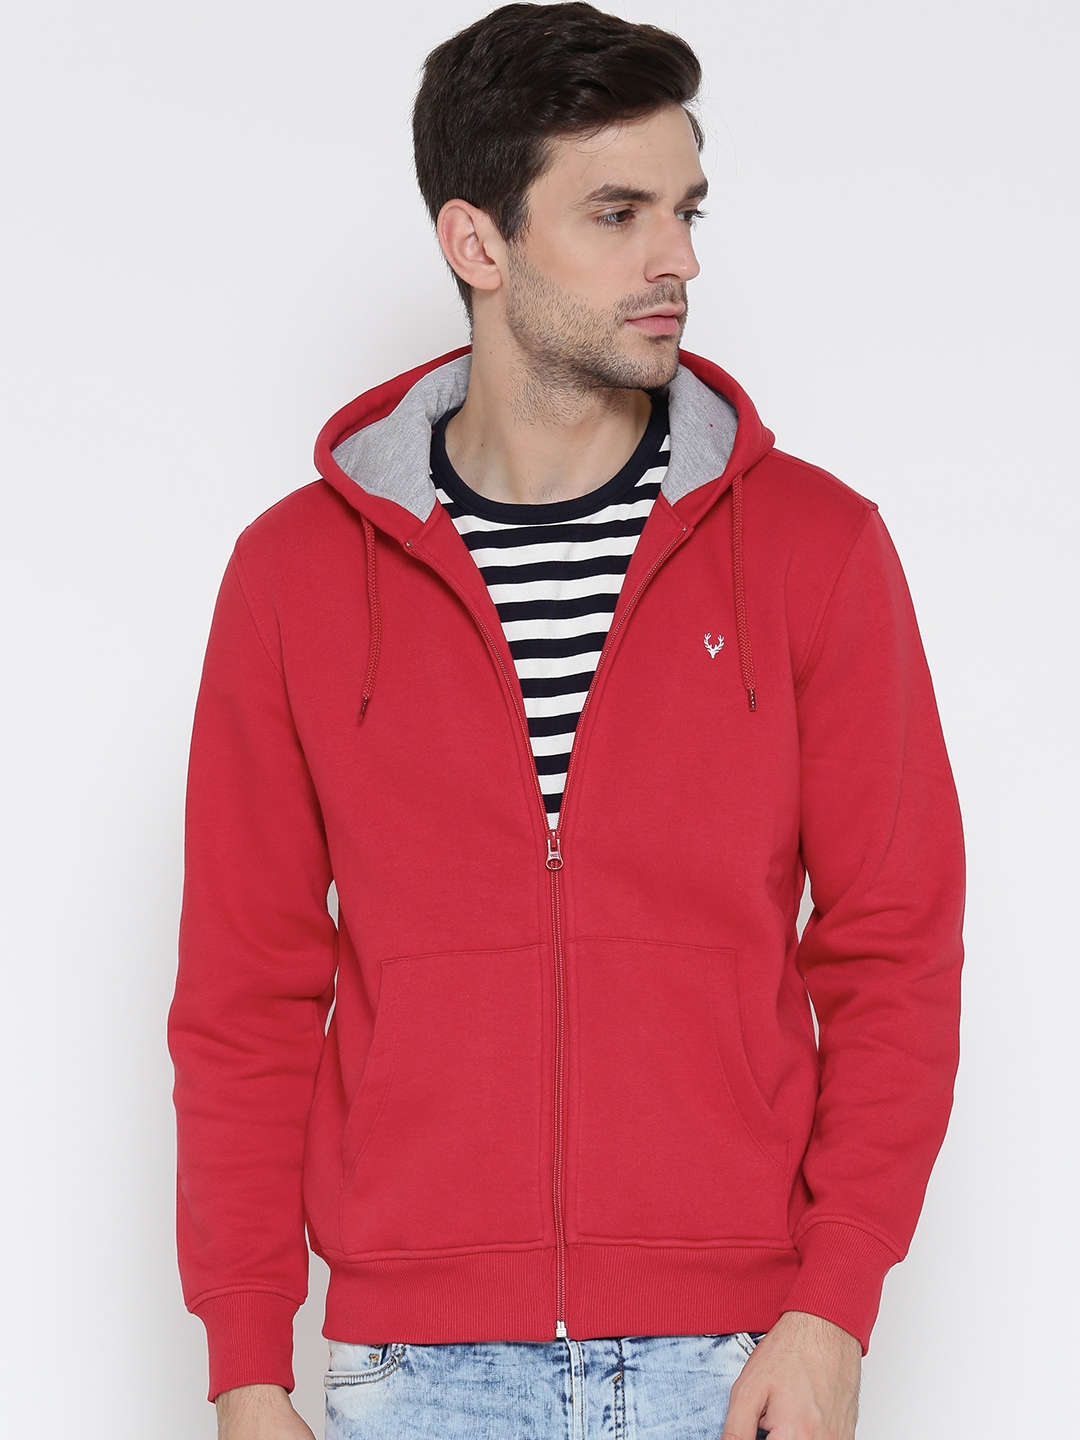 Buy Allen Solly Men Red Solid Hooded Sweatshirt - Sweatshirts for Men ...